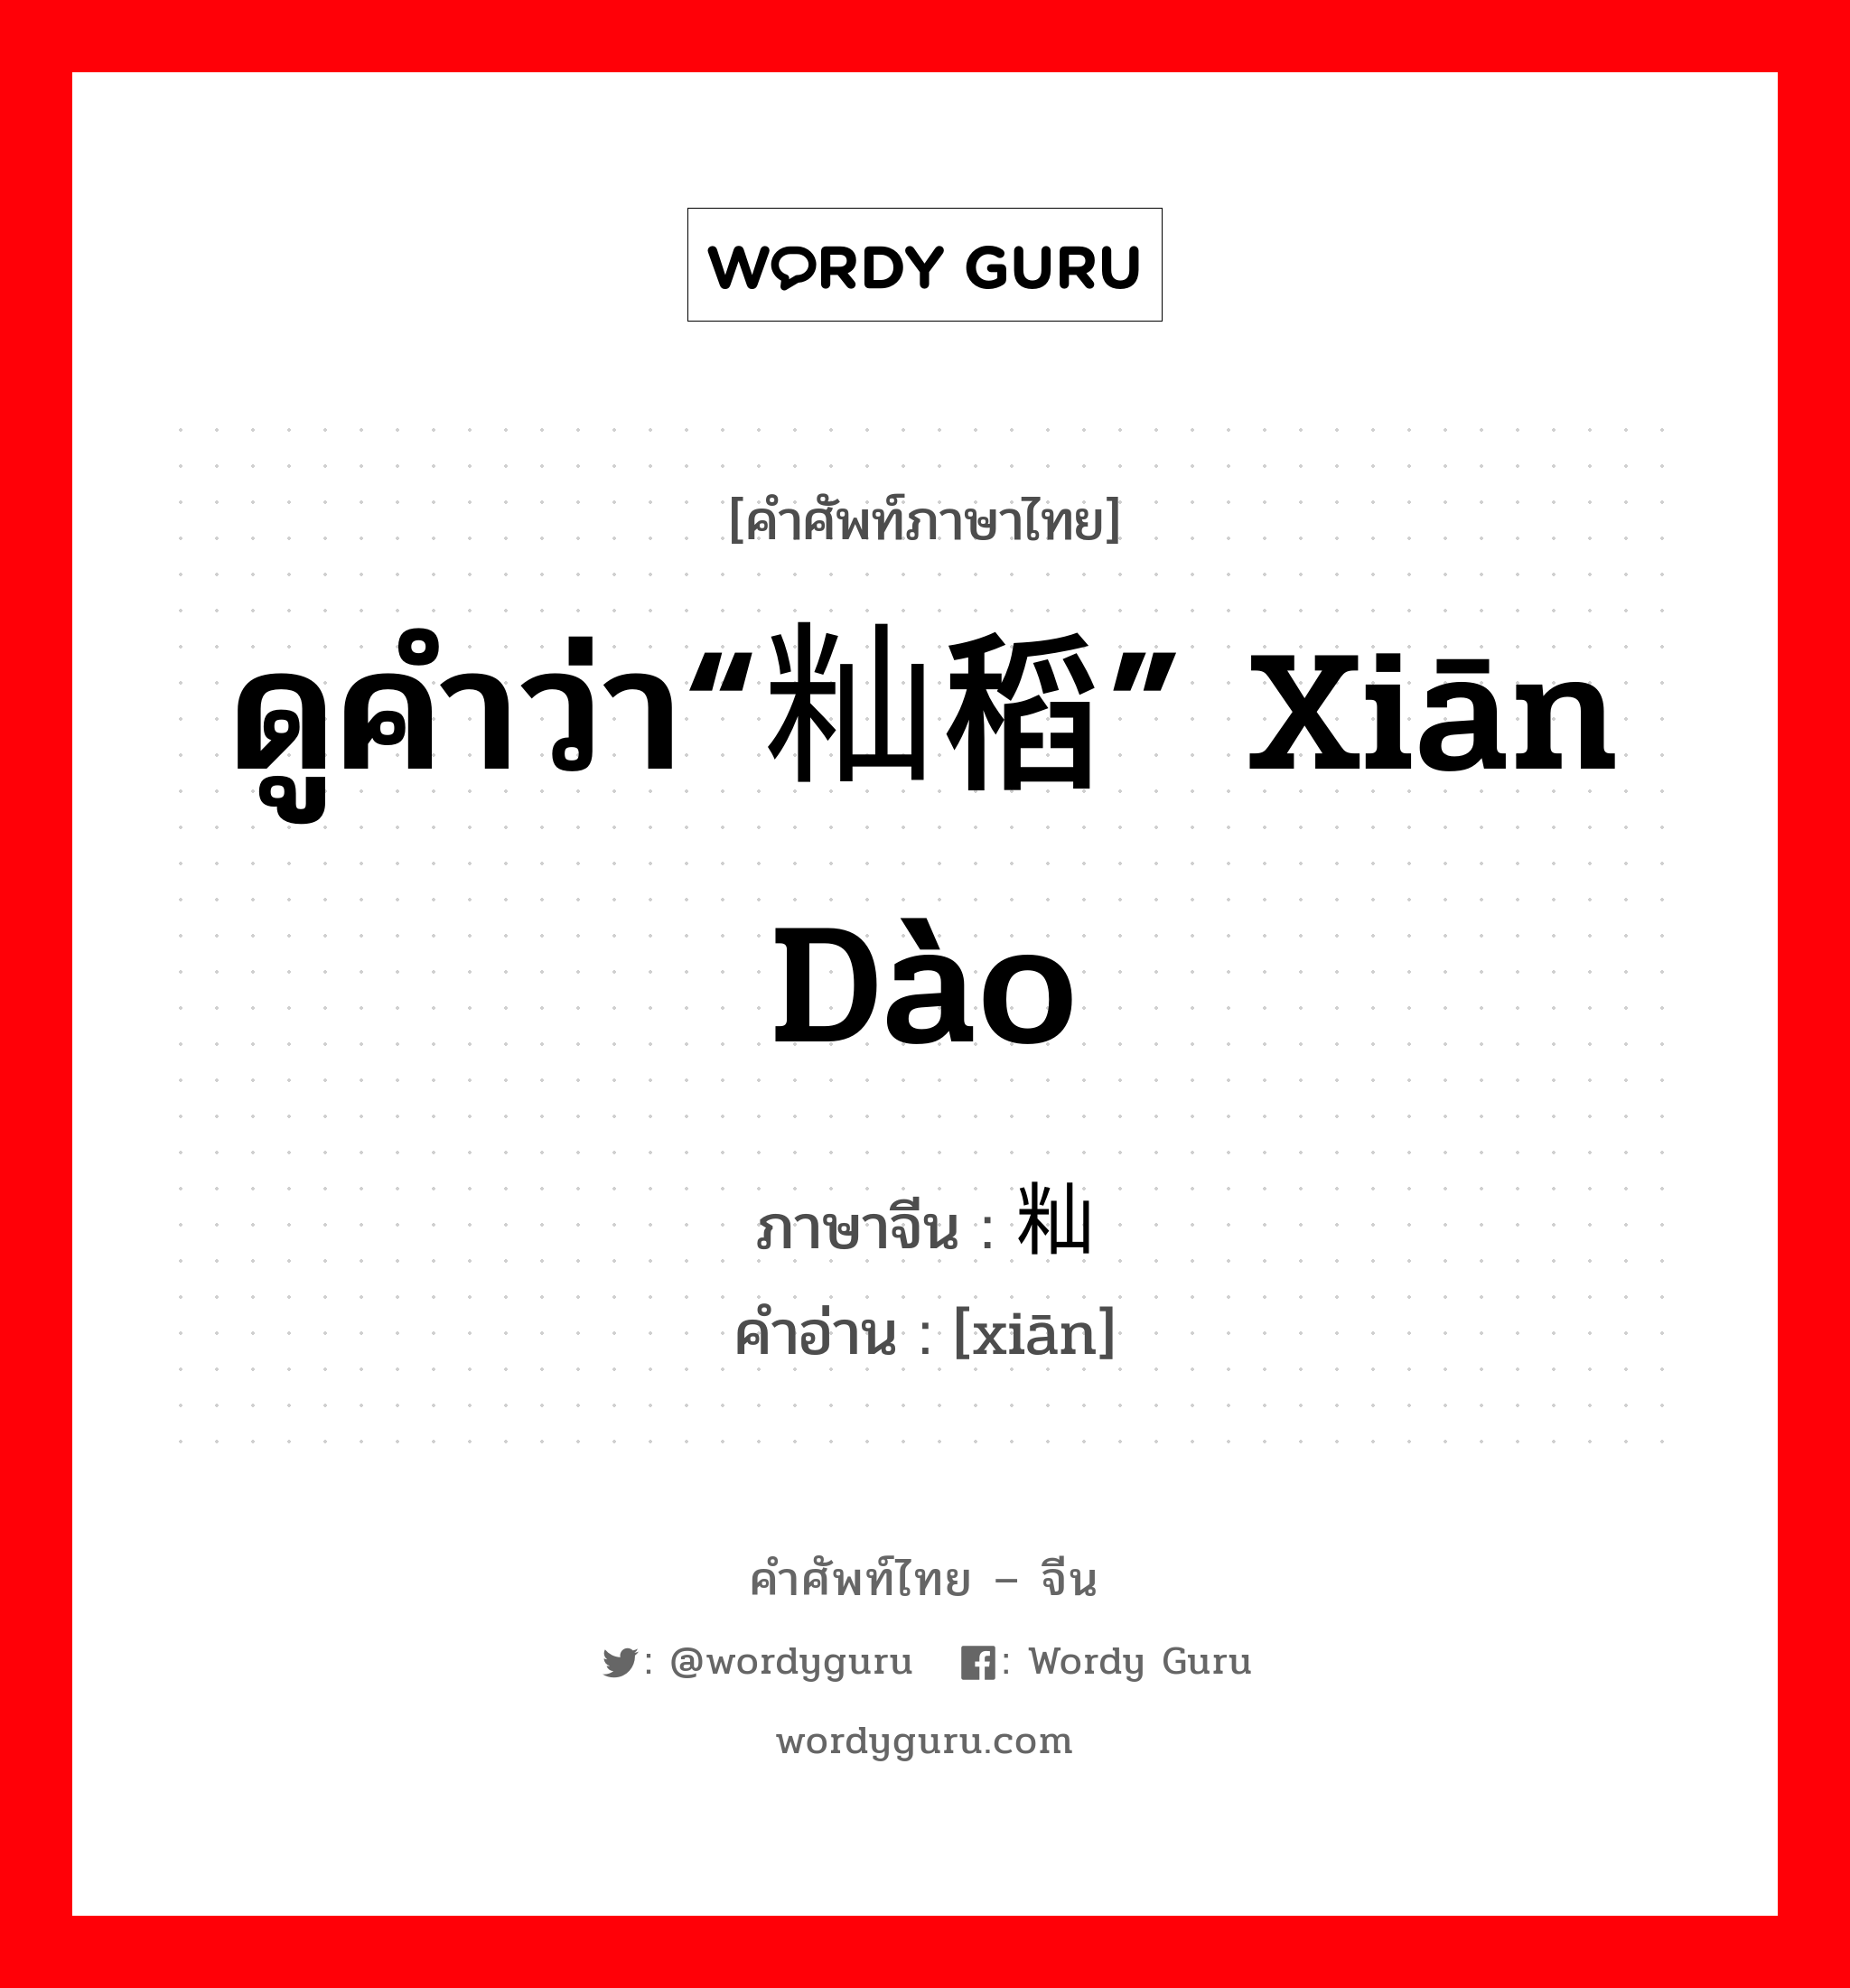 ดูคำว่า“籼稻” xiān dào ภาษาจีนคืออะไร, คำศัพท์ภาษาไทย - จีน ดูคำว่า“籼稻” xiān dào ภาษาจีน 籼 คำอ่าน [xiān]